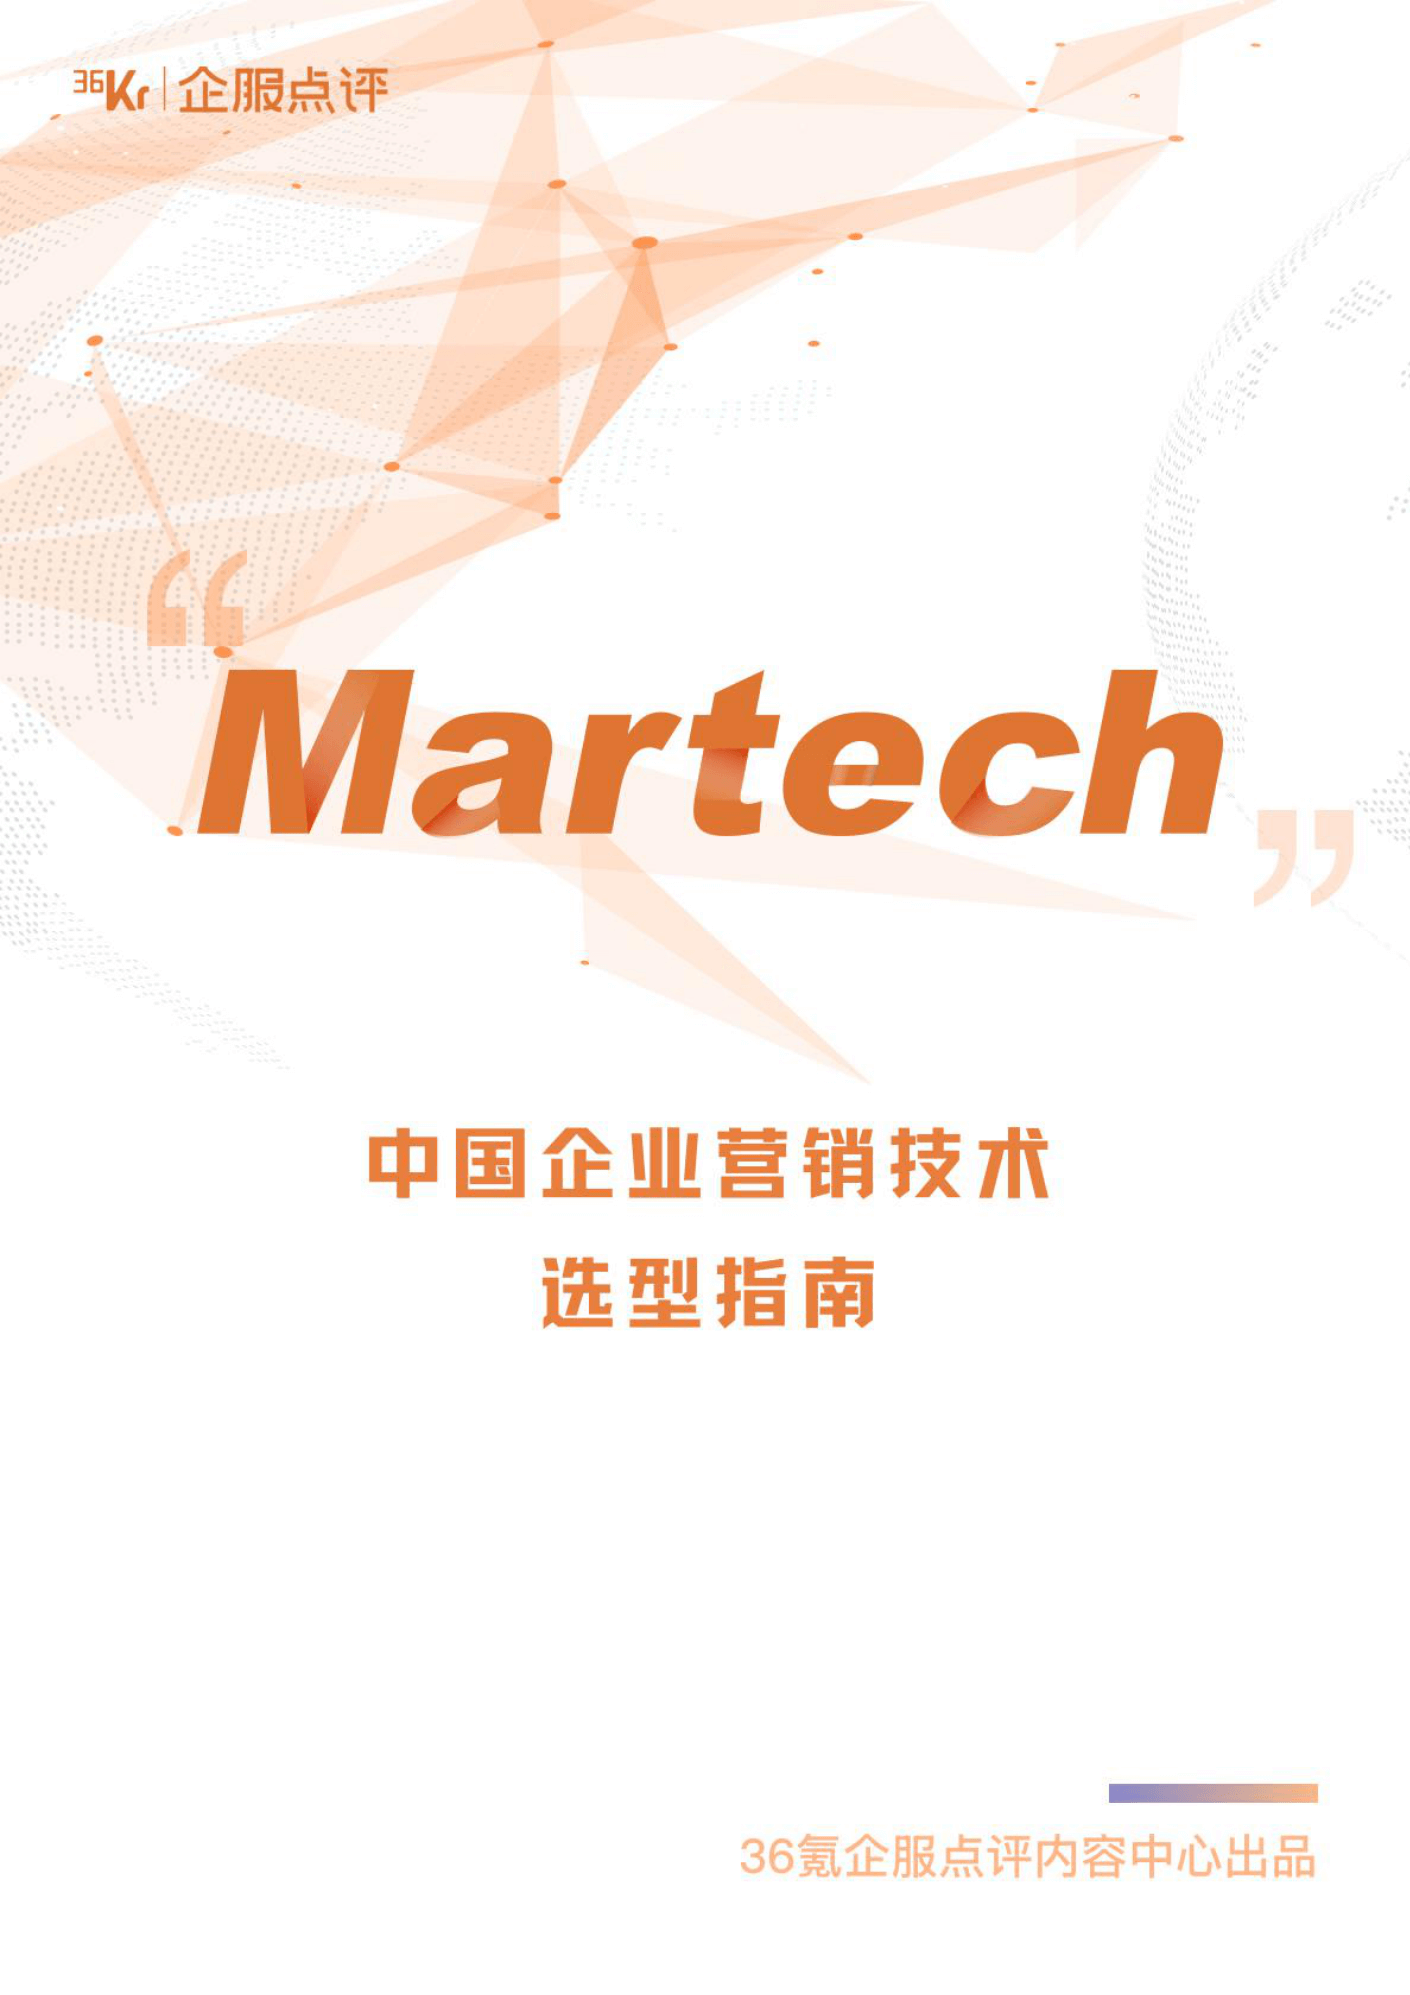 中国企业营销技术（MarTech）选型指南